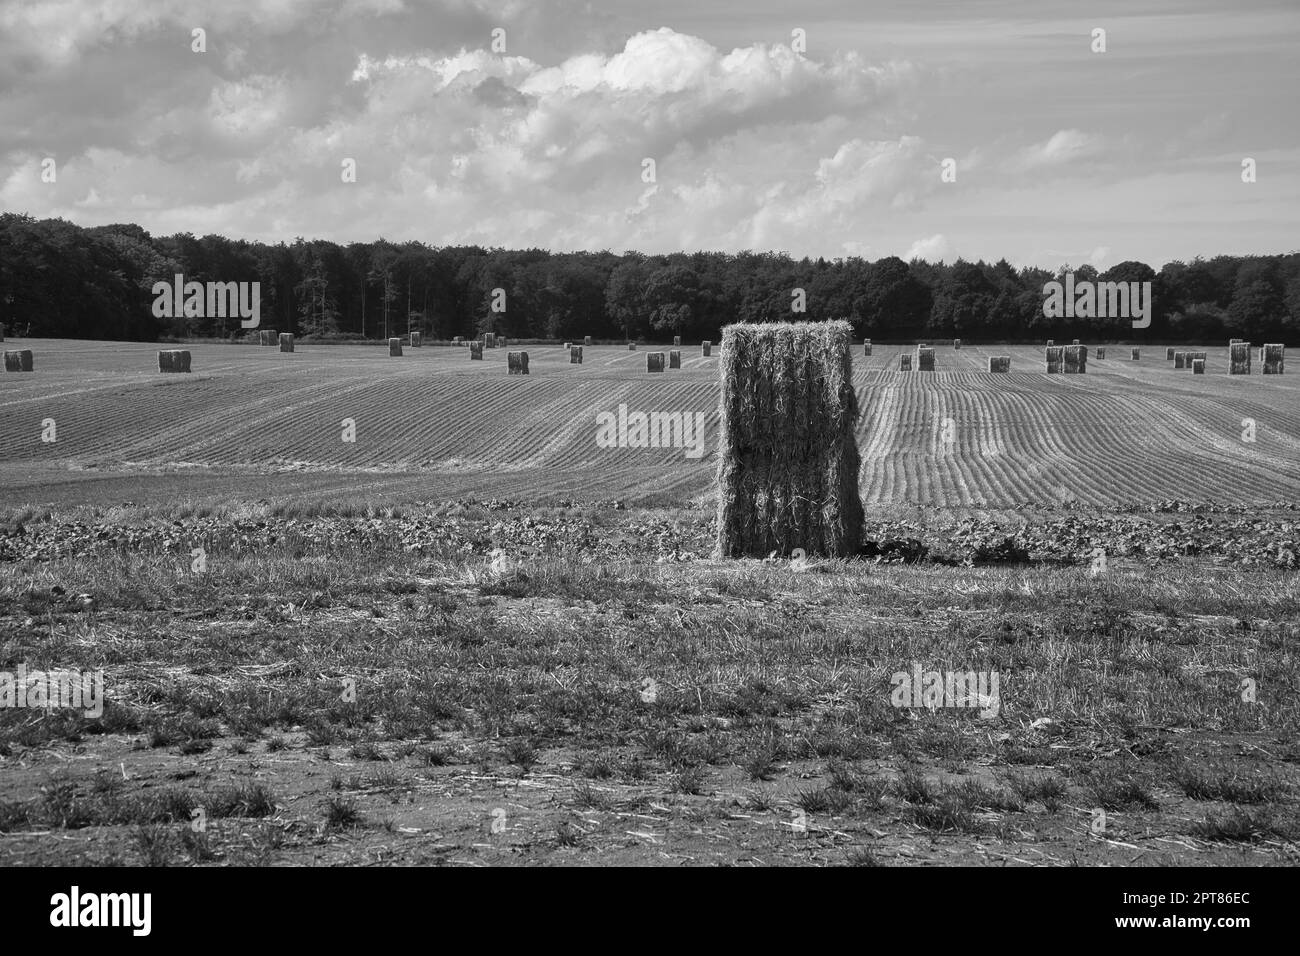 Strohballen, schwarz-weiß, auf einem geernteten Weizenfeld fotografiert. Lebensmittelversorgung. Landwirtschaft, um die Menschheit zu ernähren. Landschaft aus der Natur aufgenommen. Stockfoto